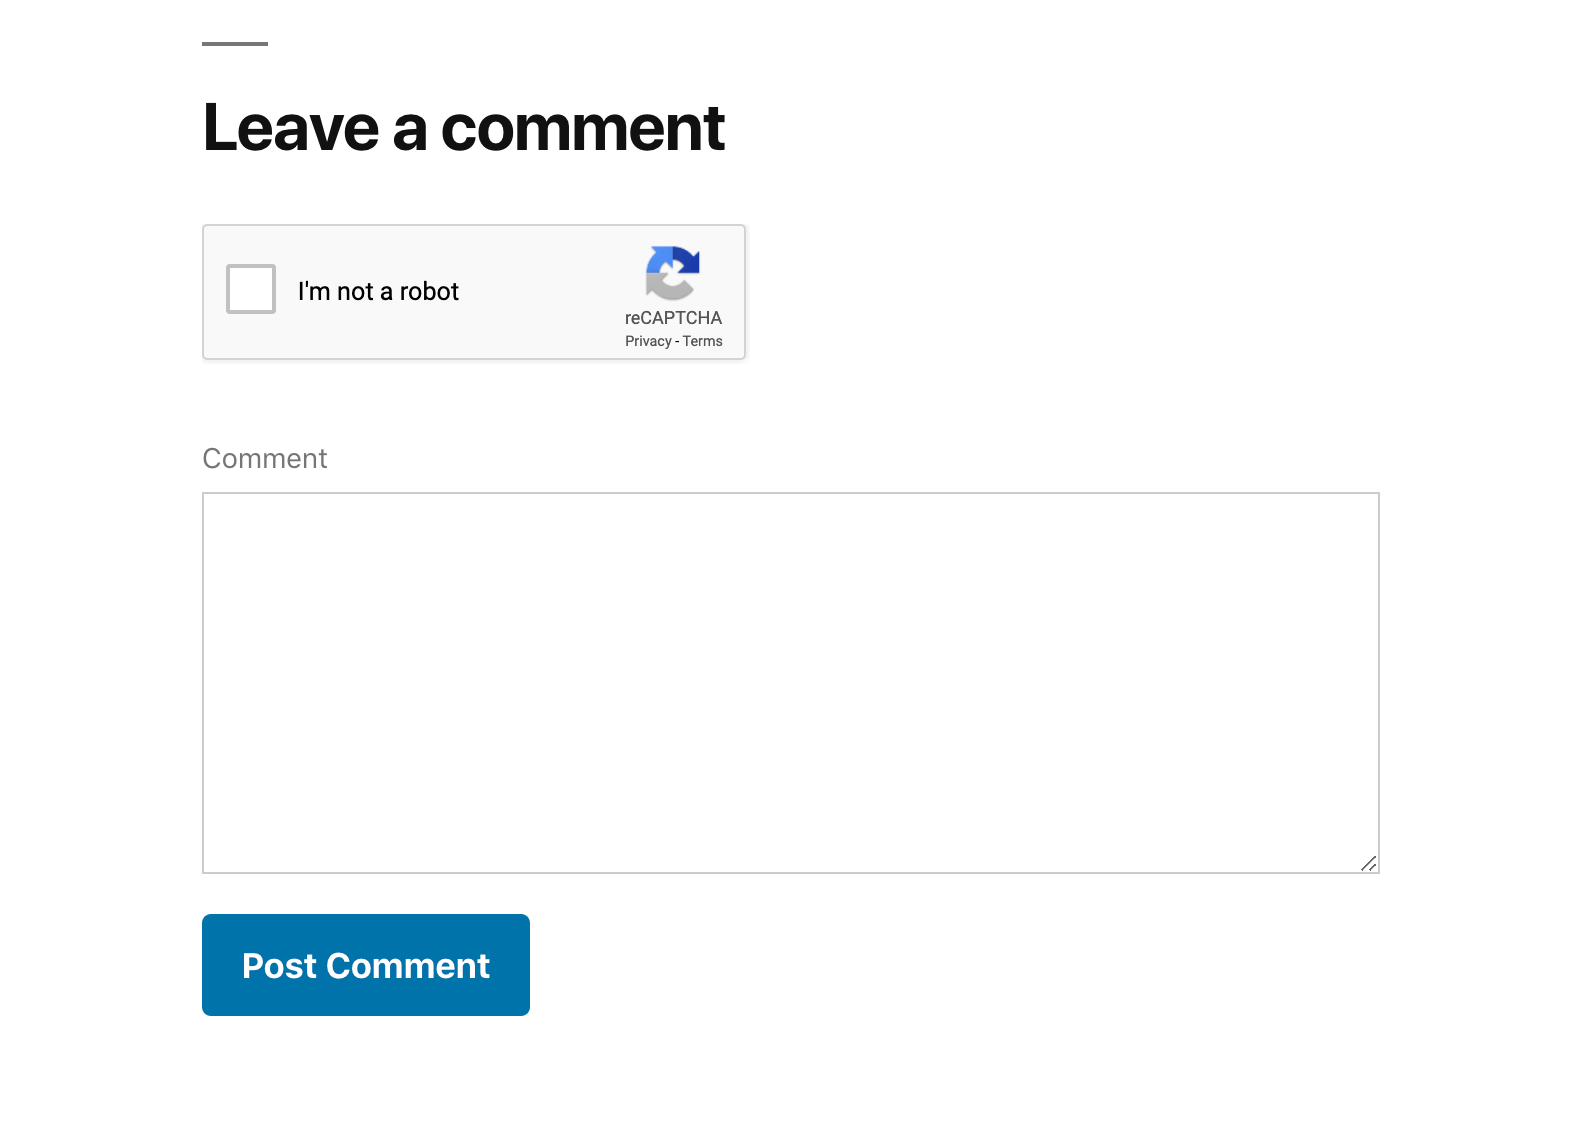 Un exemple de CAPTCHA sur un formulaire de soumission de commentaires.